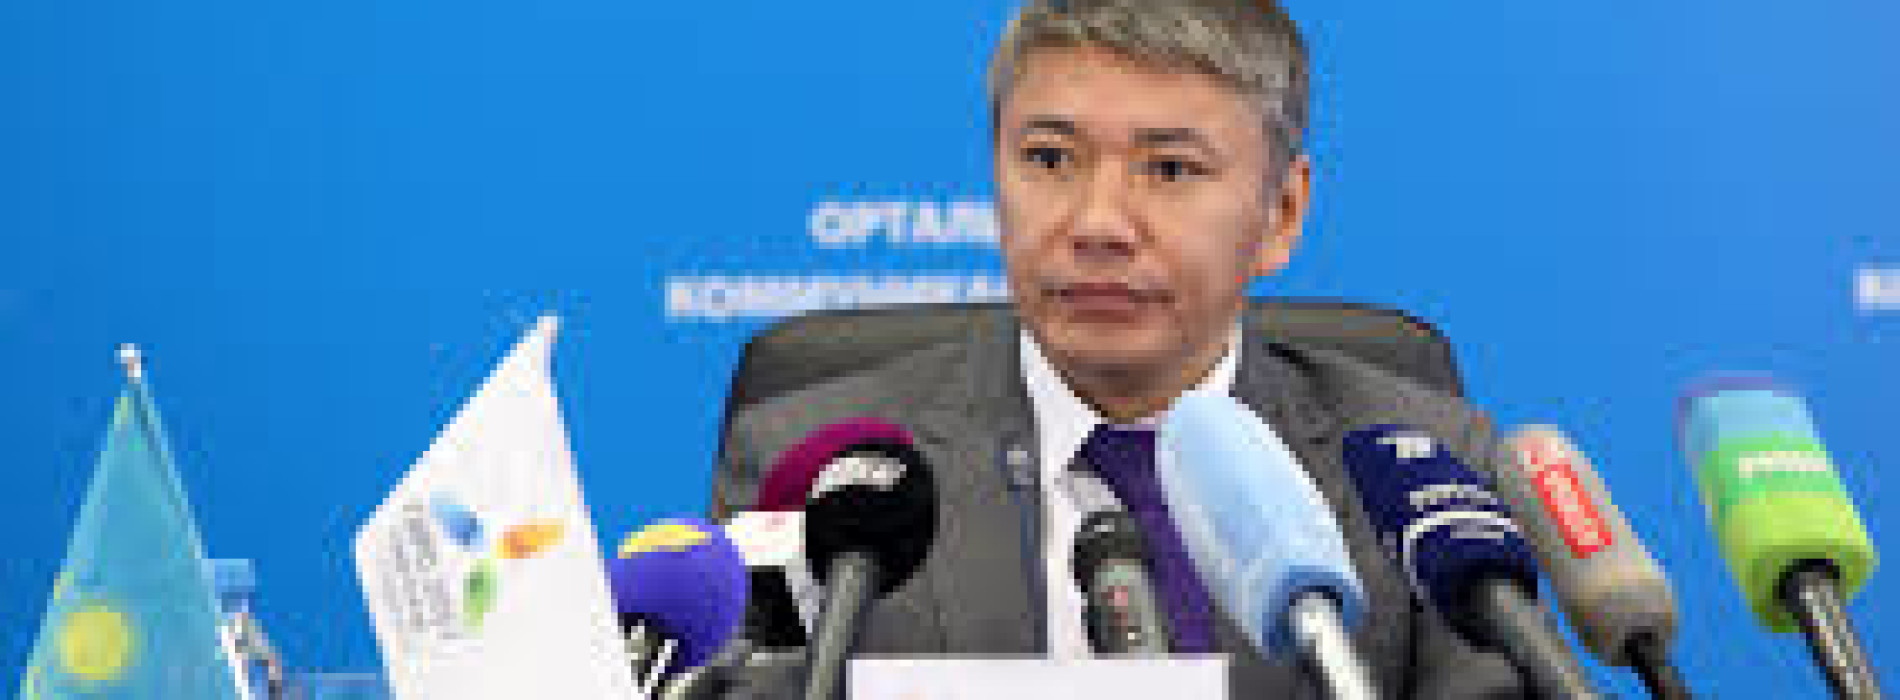 Талгат Ермегияев, экс-глава НК «Астана ЭКСПО-2017» находится под домашним арестом